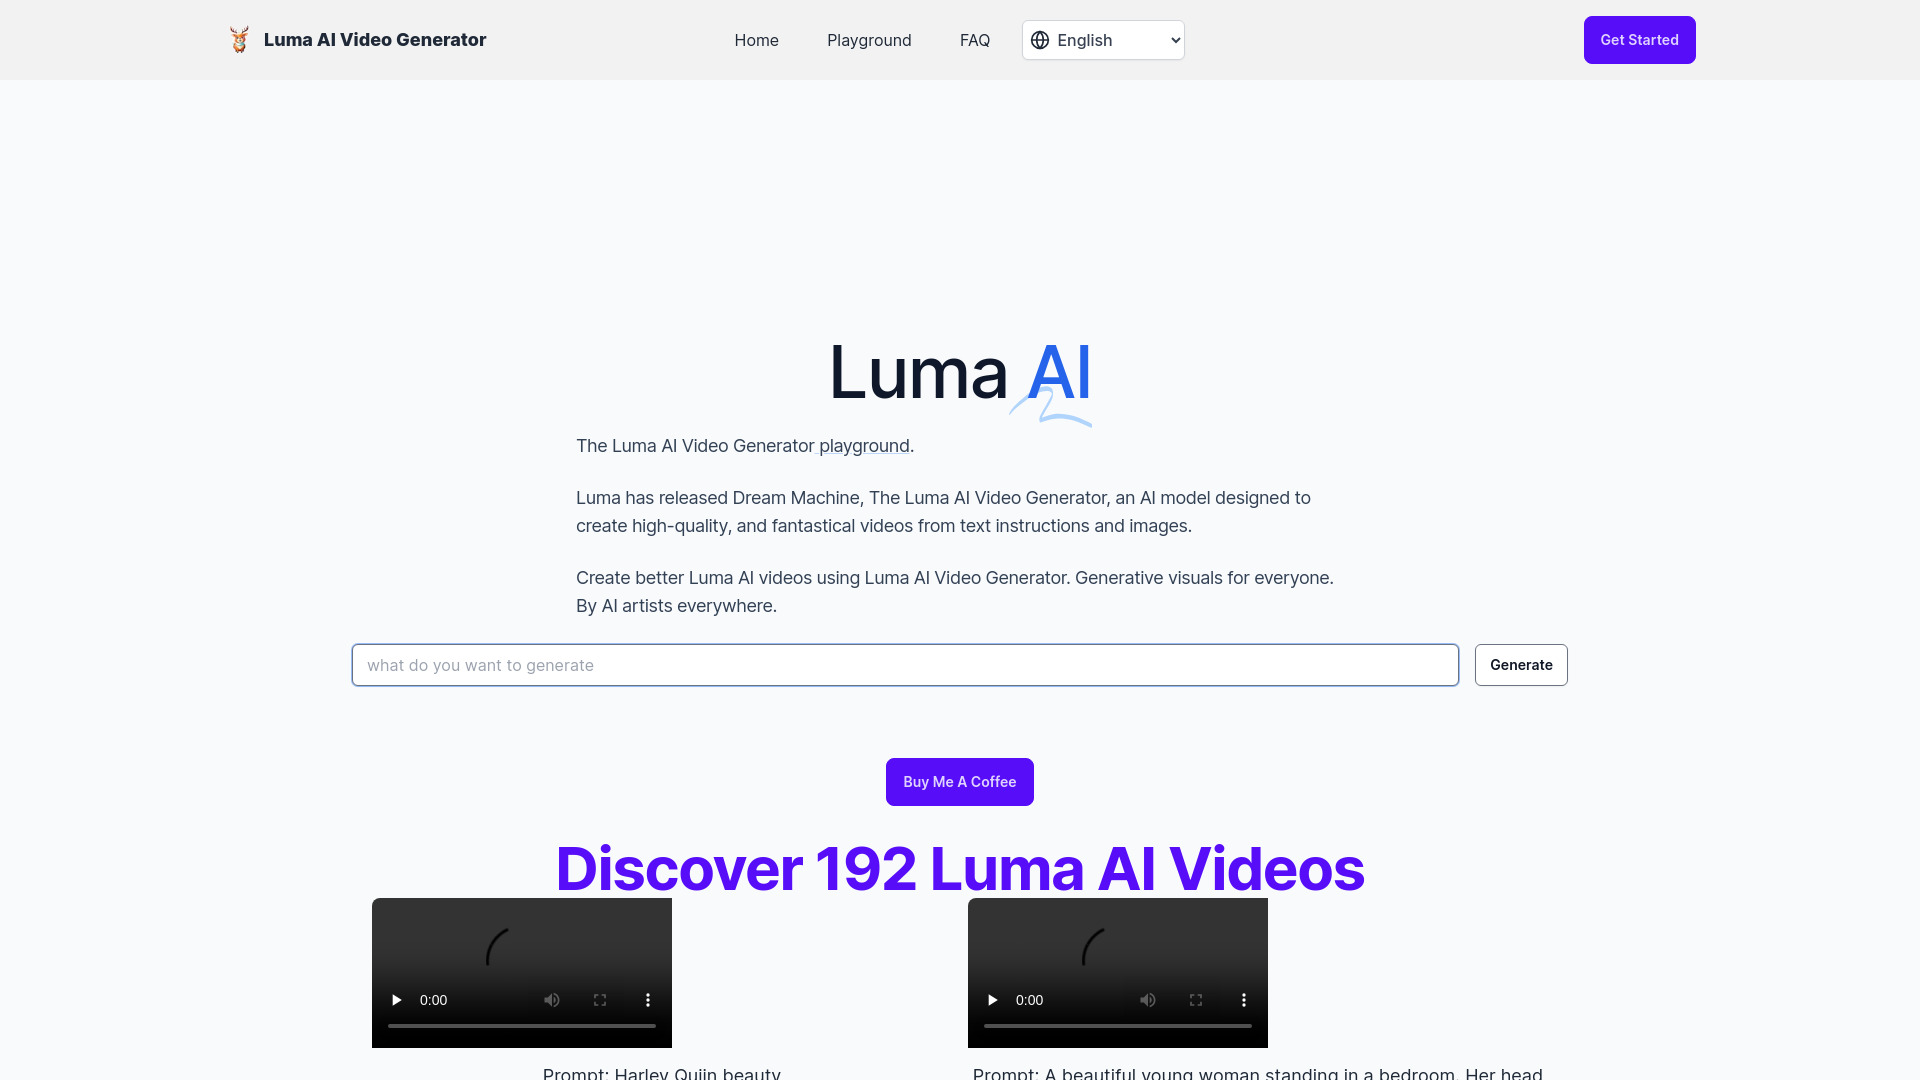 免費 Luma AI 影片產生器